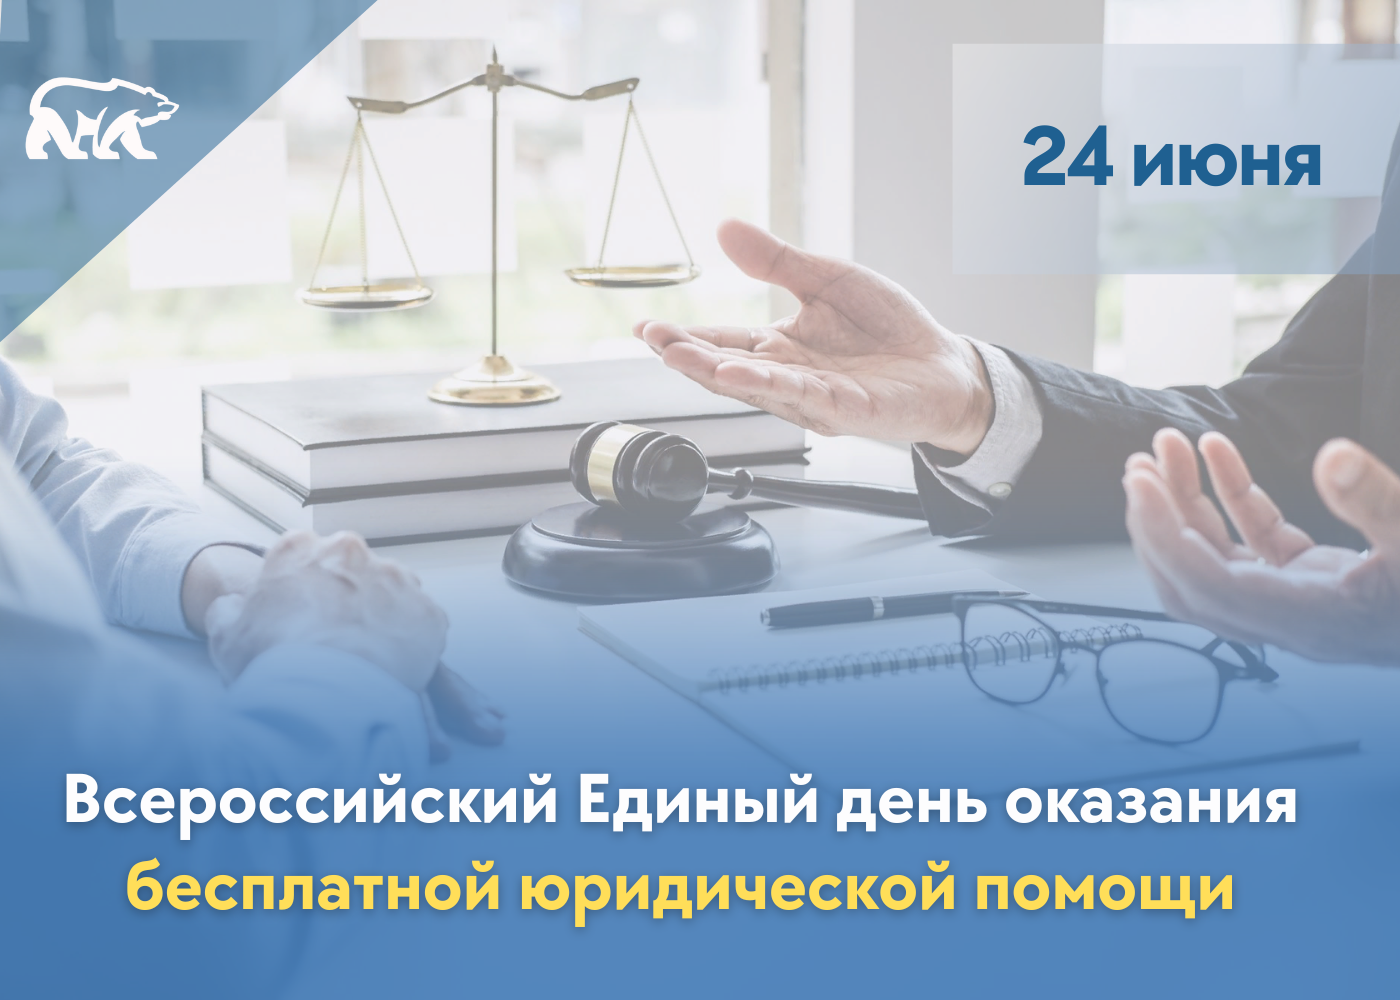 Всероссийский Единый день оказания бесплатной юридической помощи